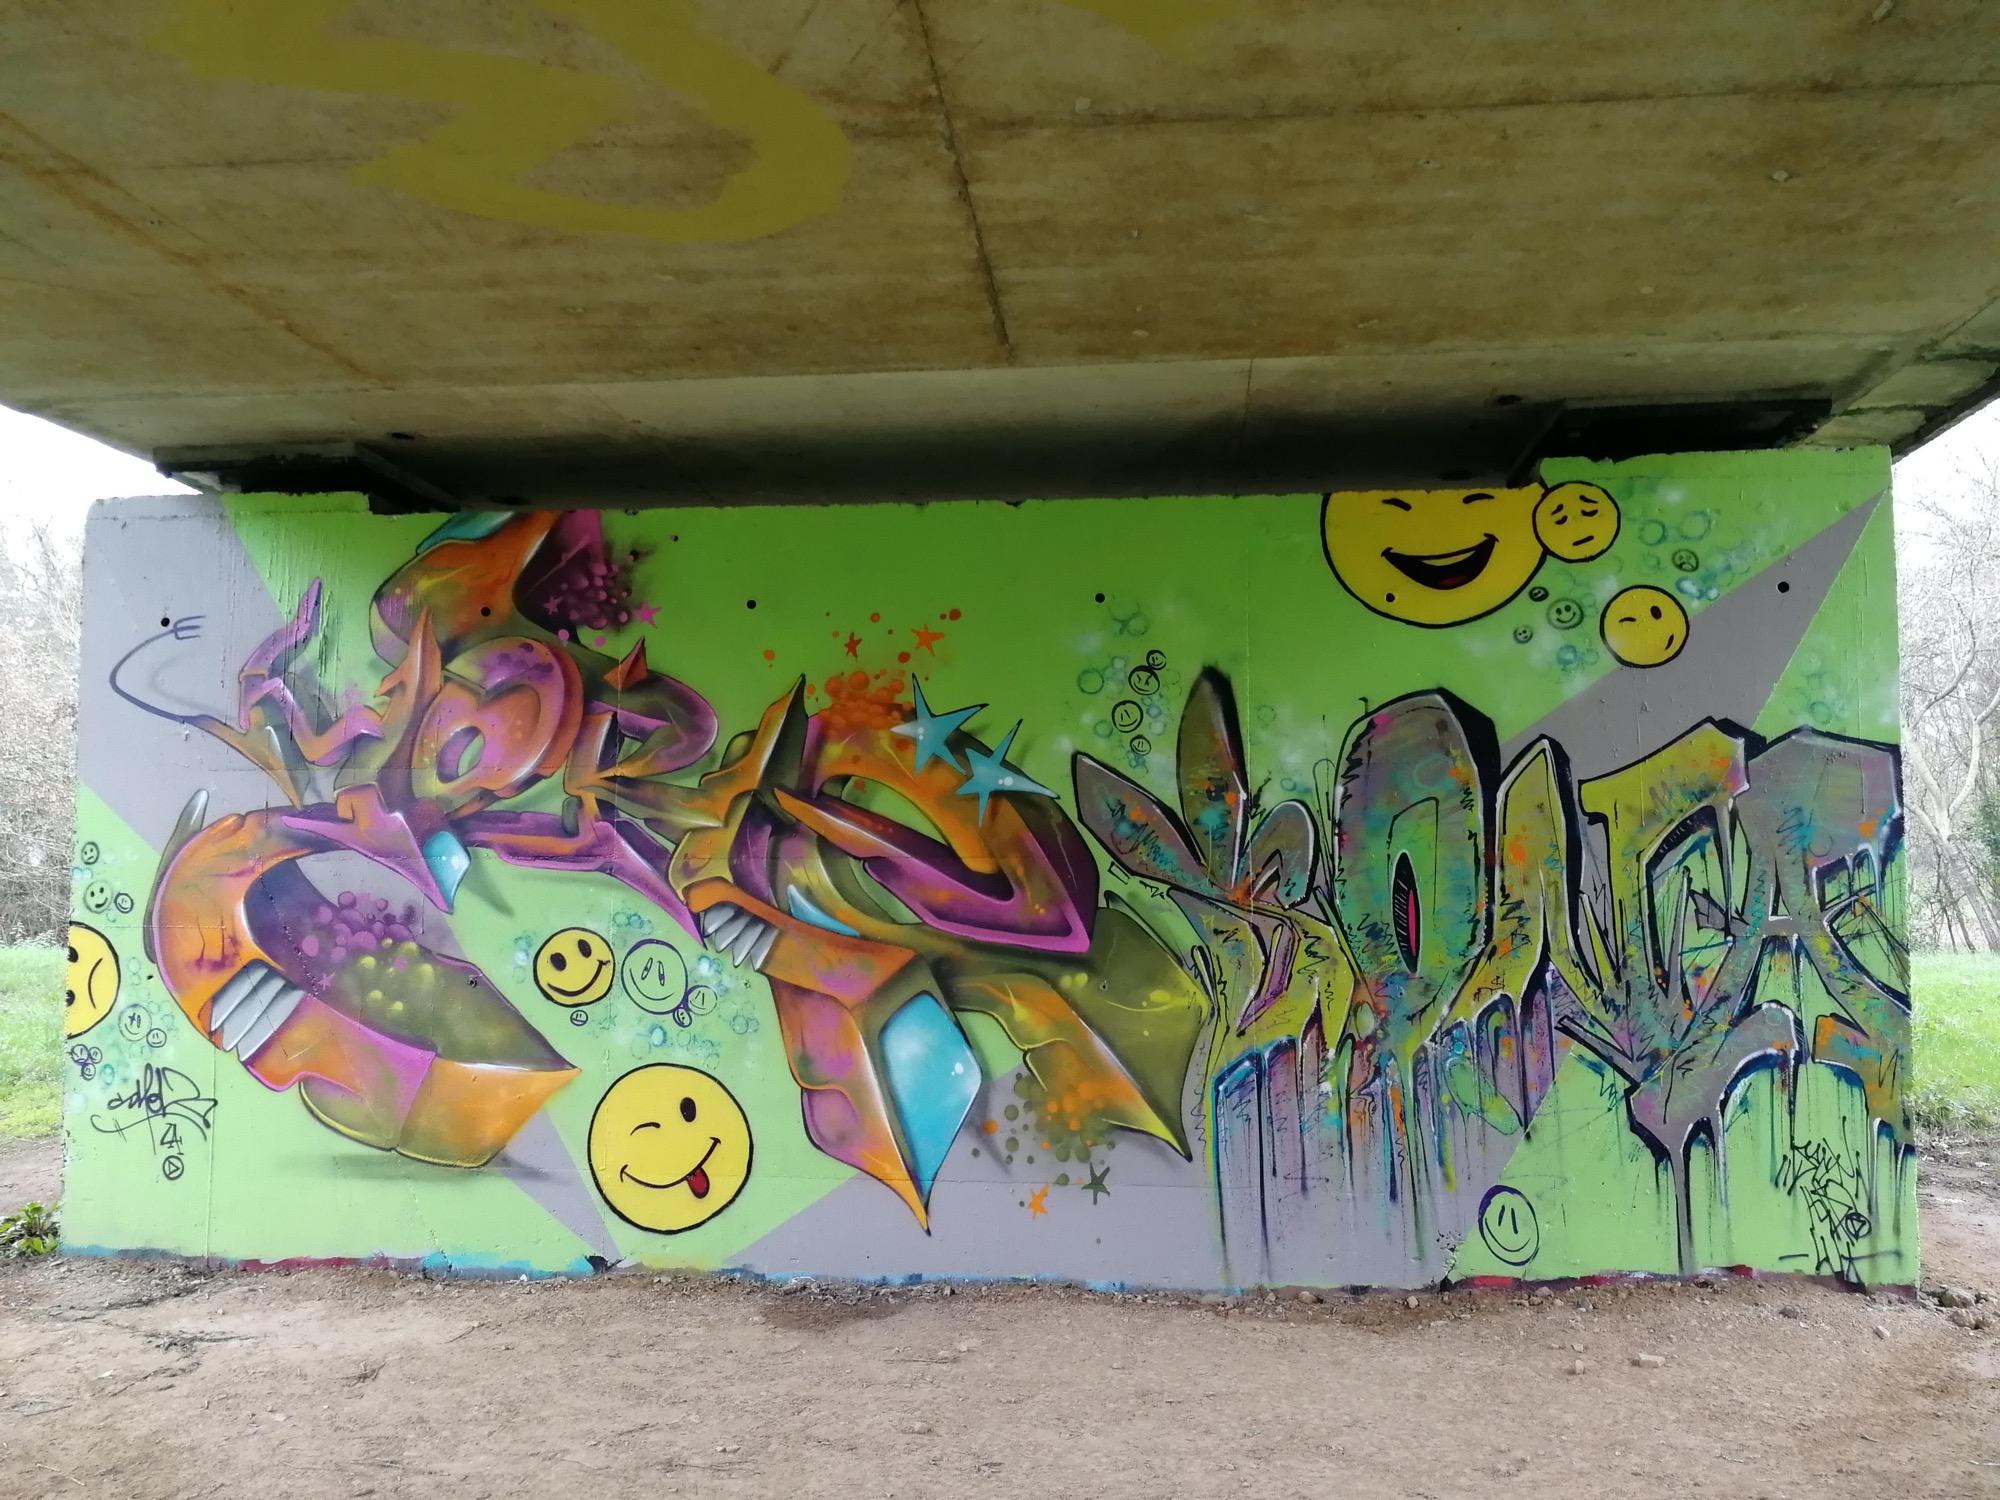 Graffiti 574  captured by Rabot in Rezé France